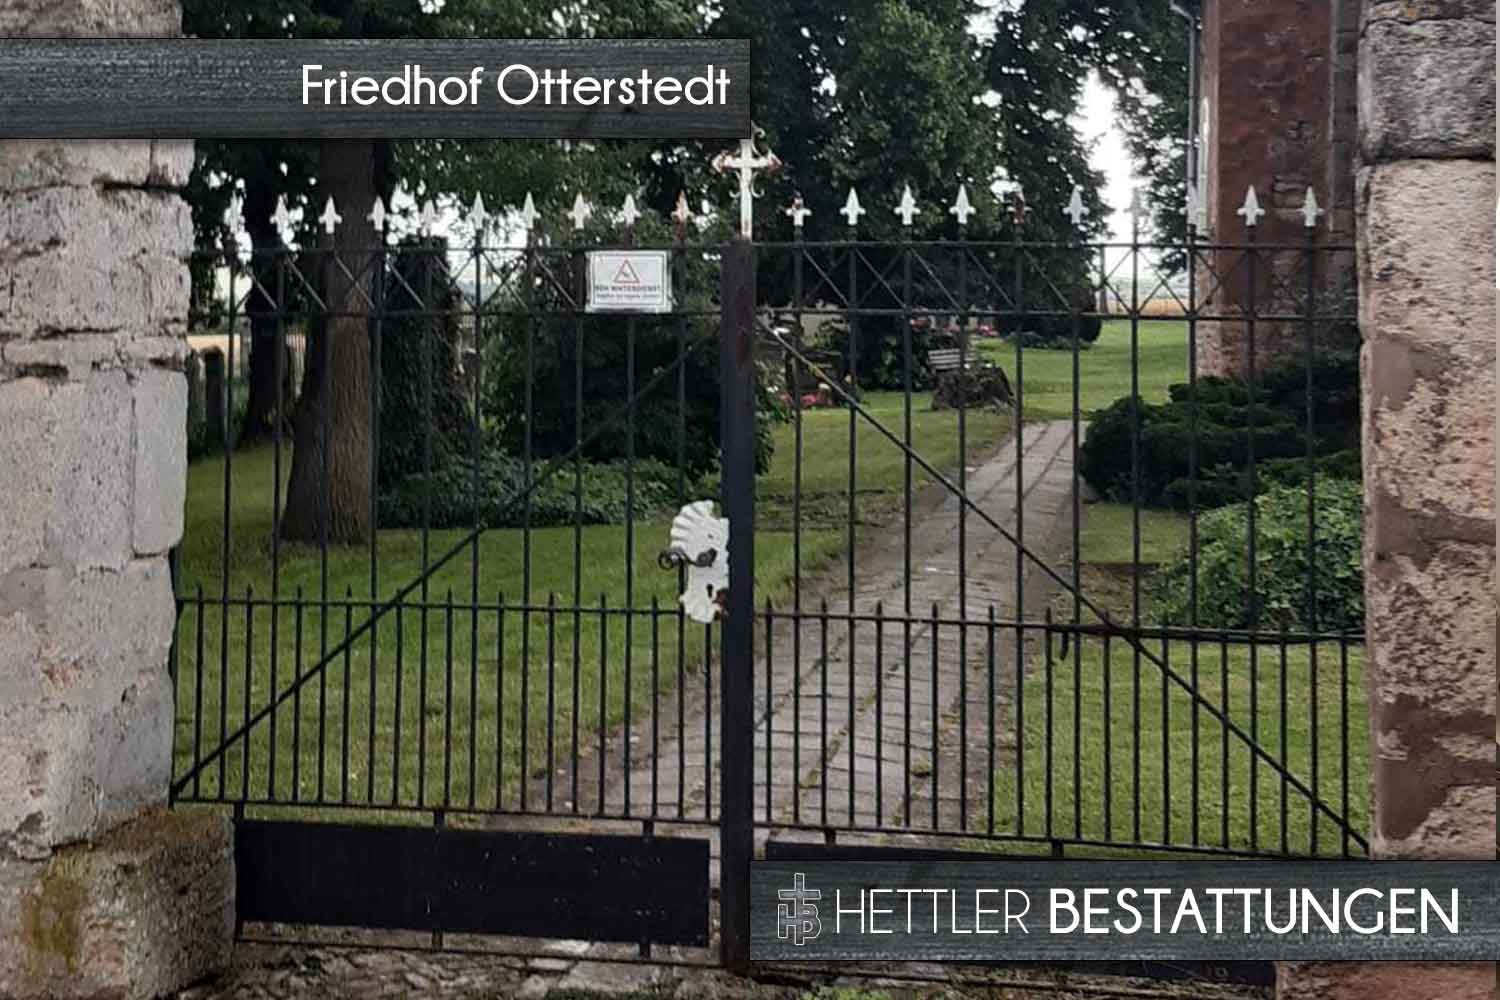 Friedhof in Otterstedt. Ihr Ort des Abschieds mit Hettler Bestattungen.